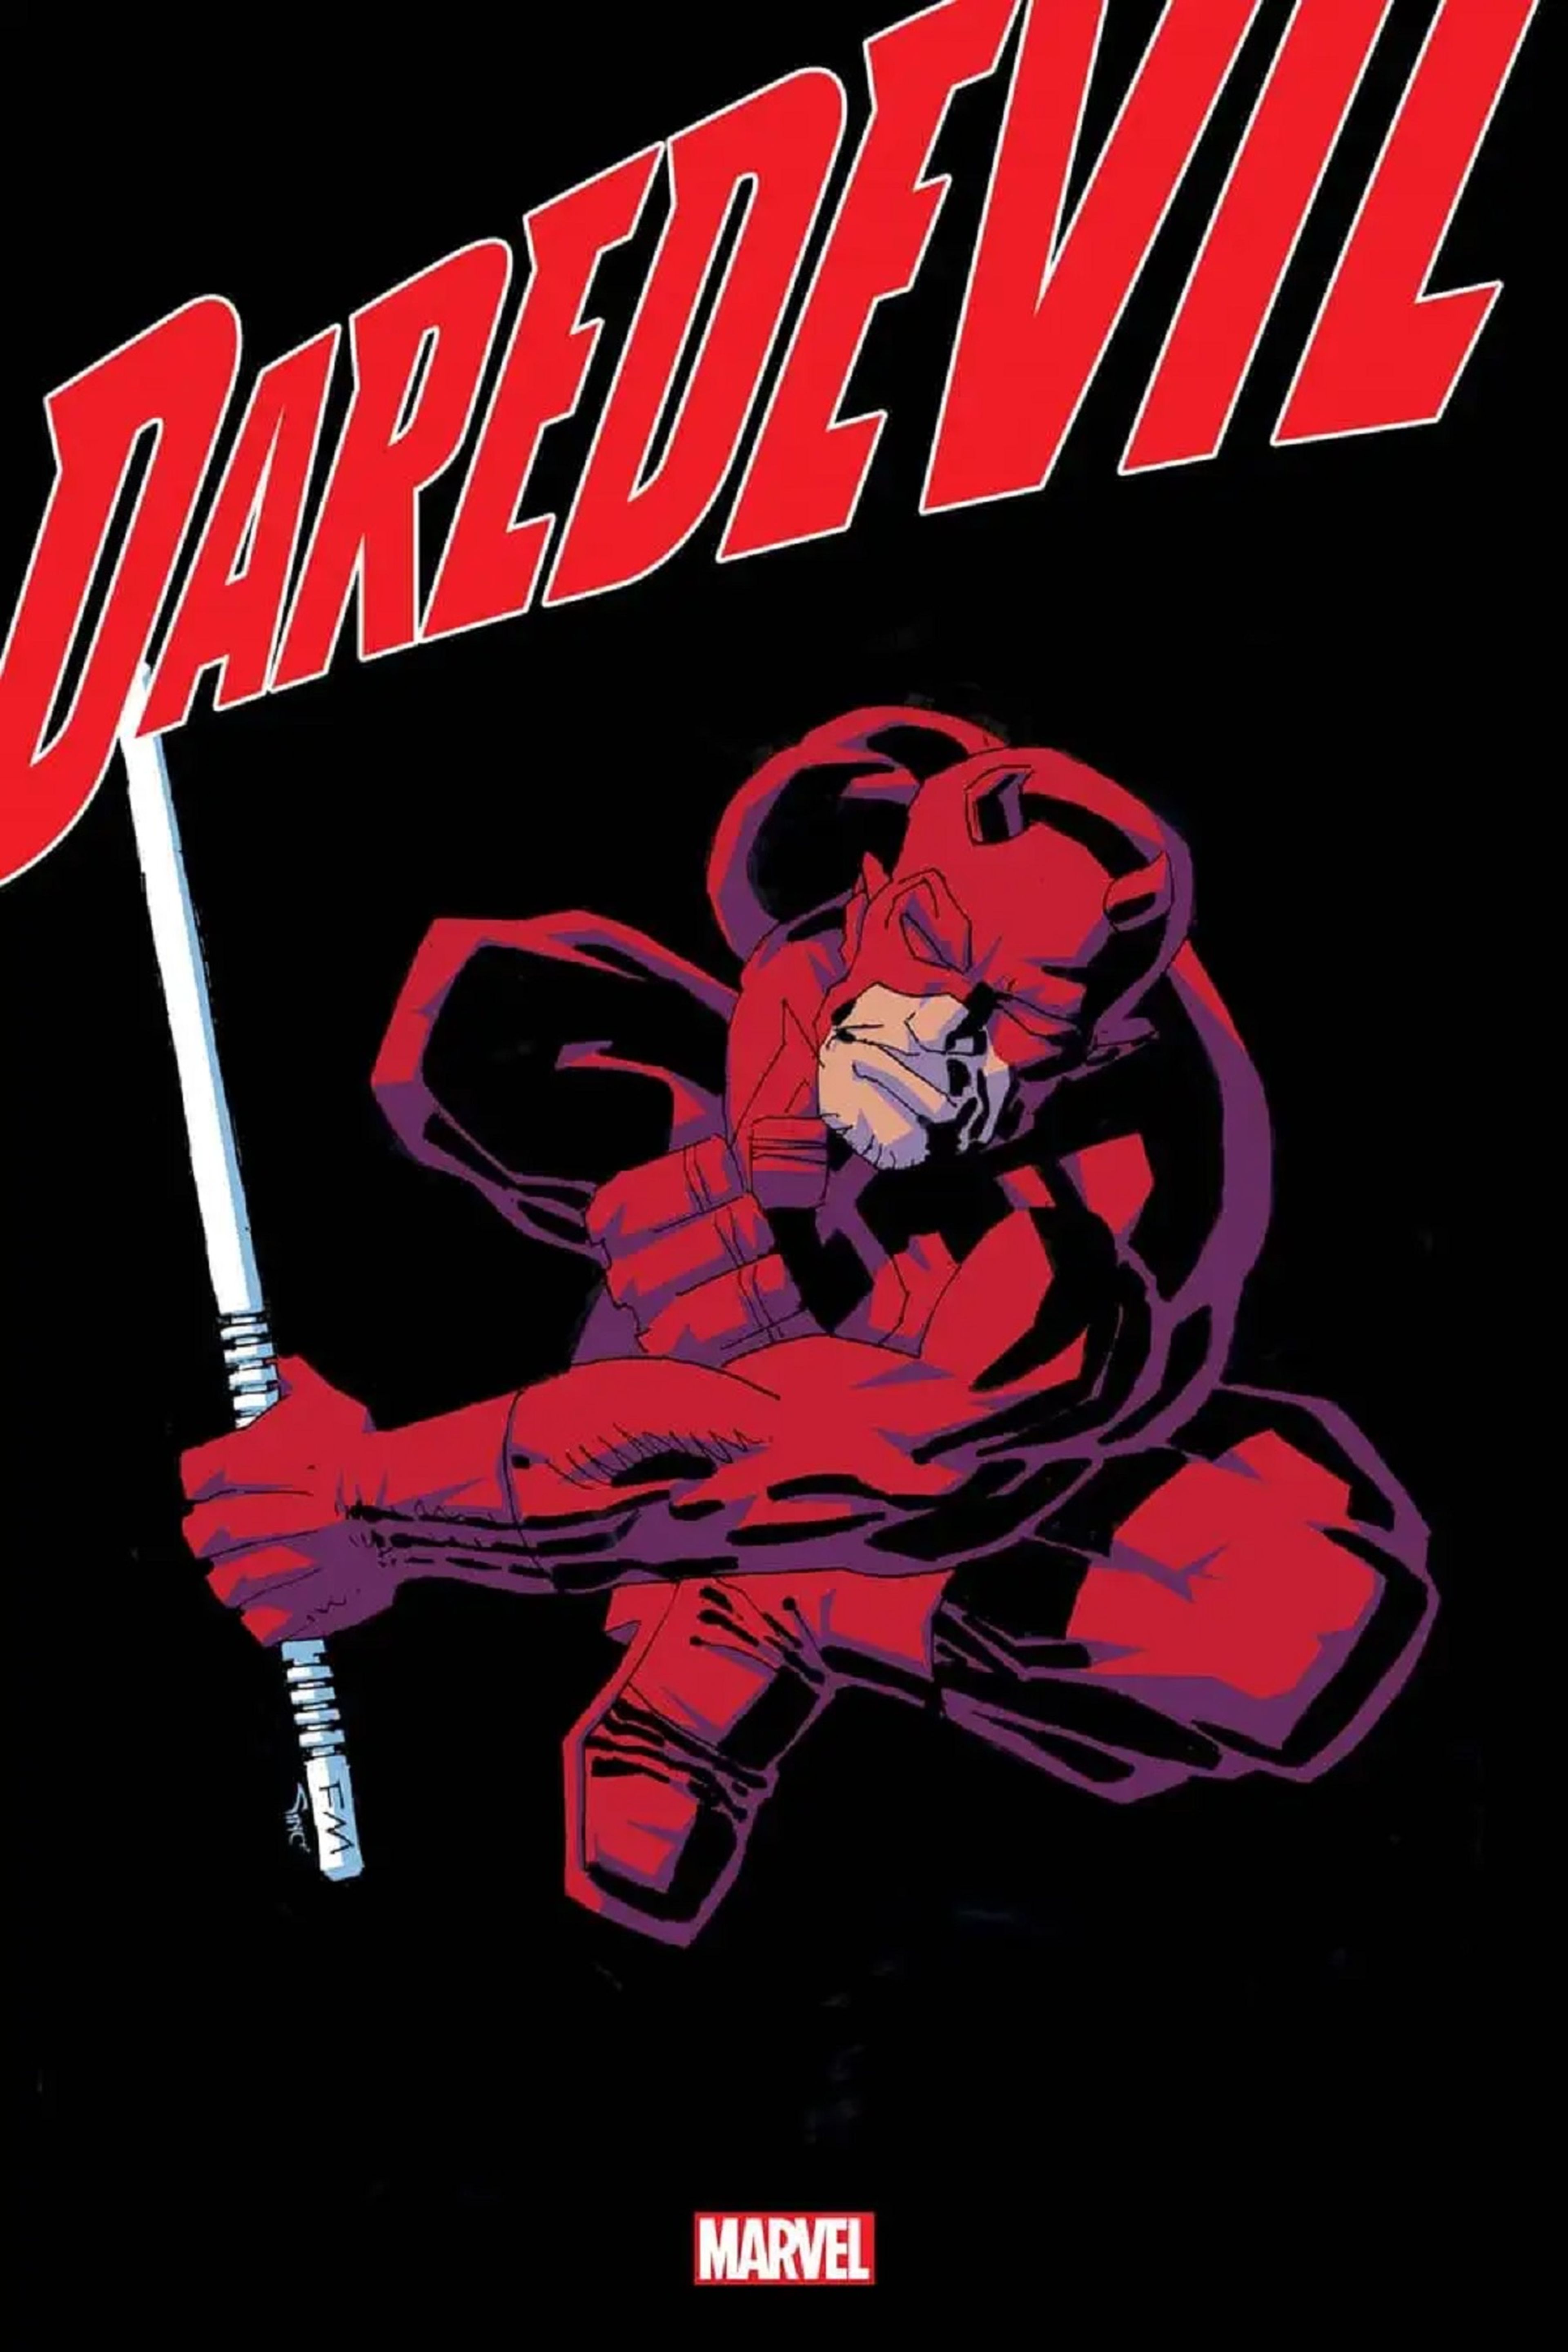 La portada de Daredevil hecha por Frank Miller